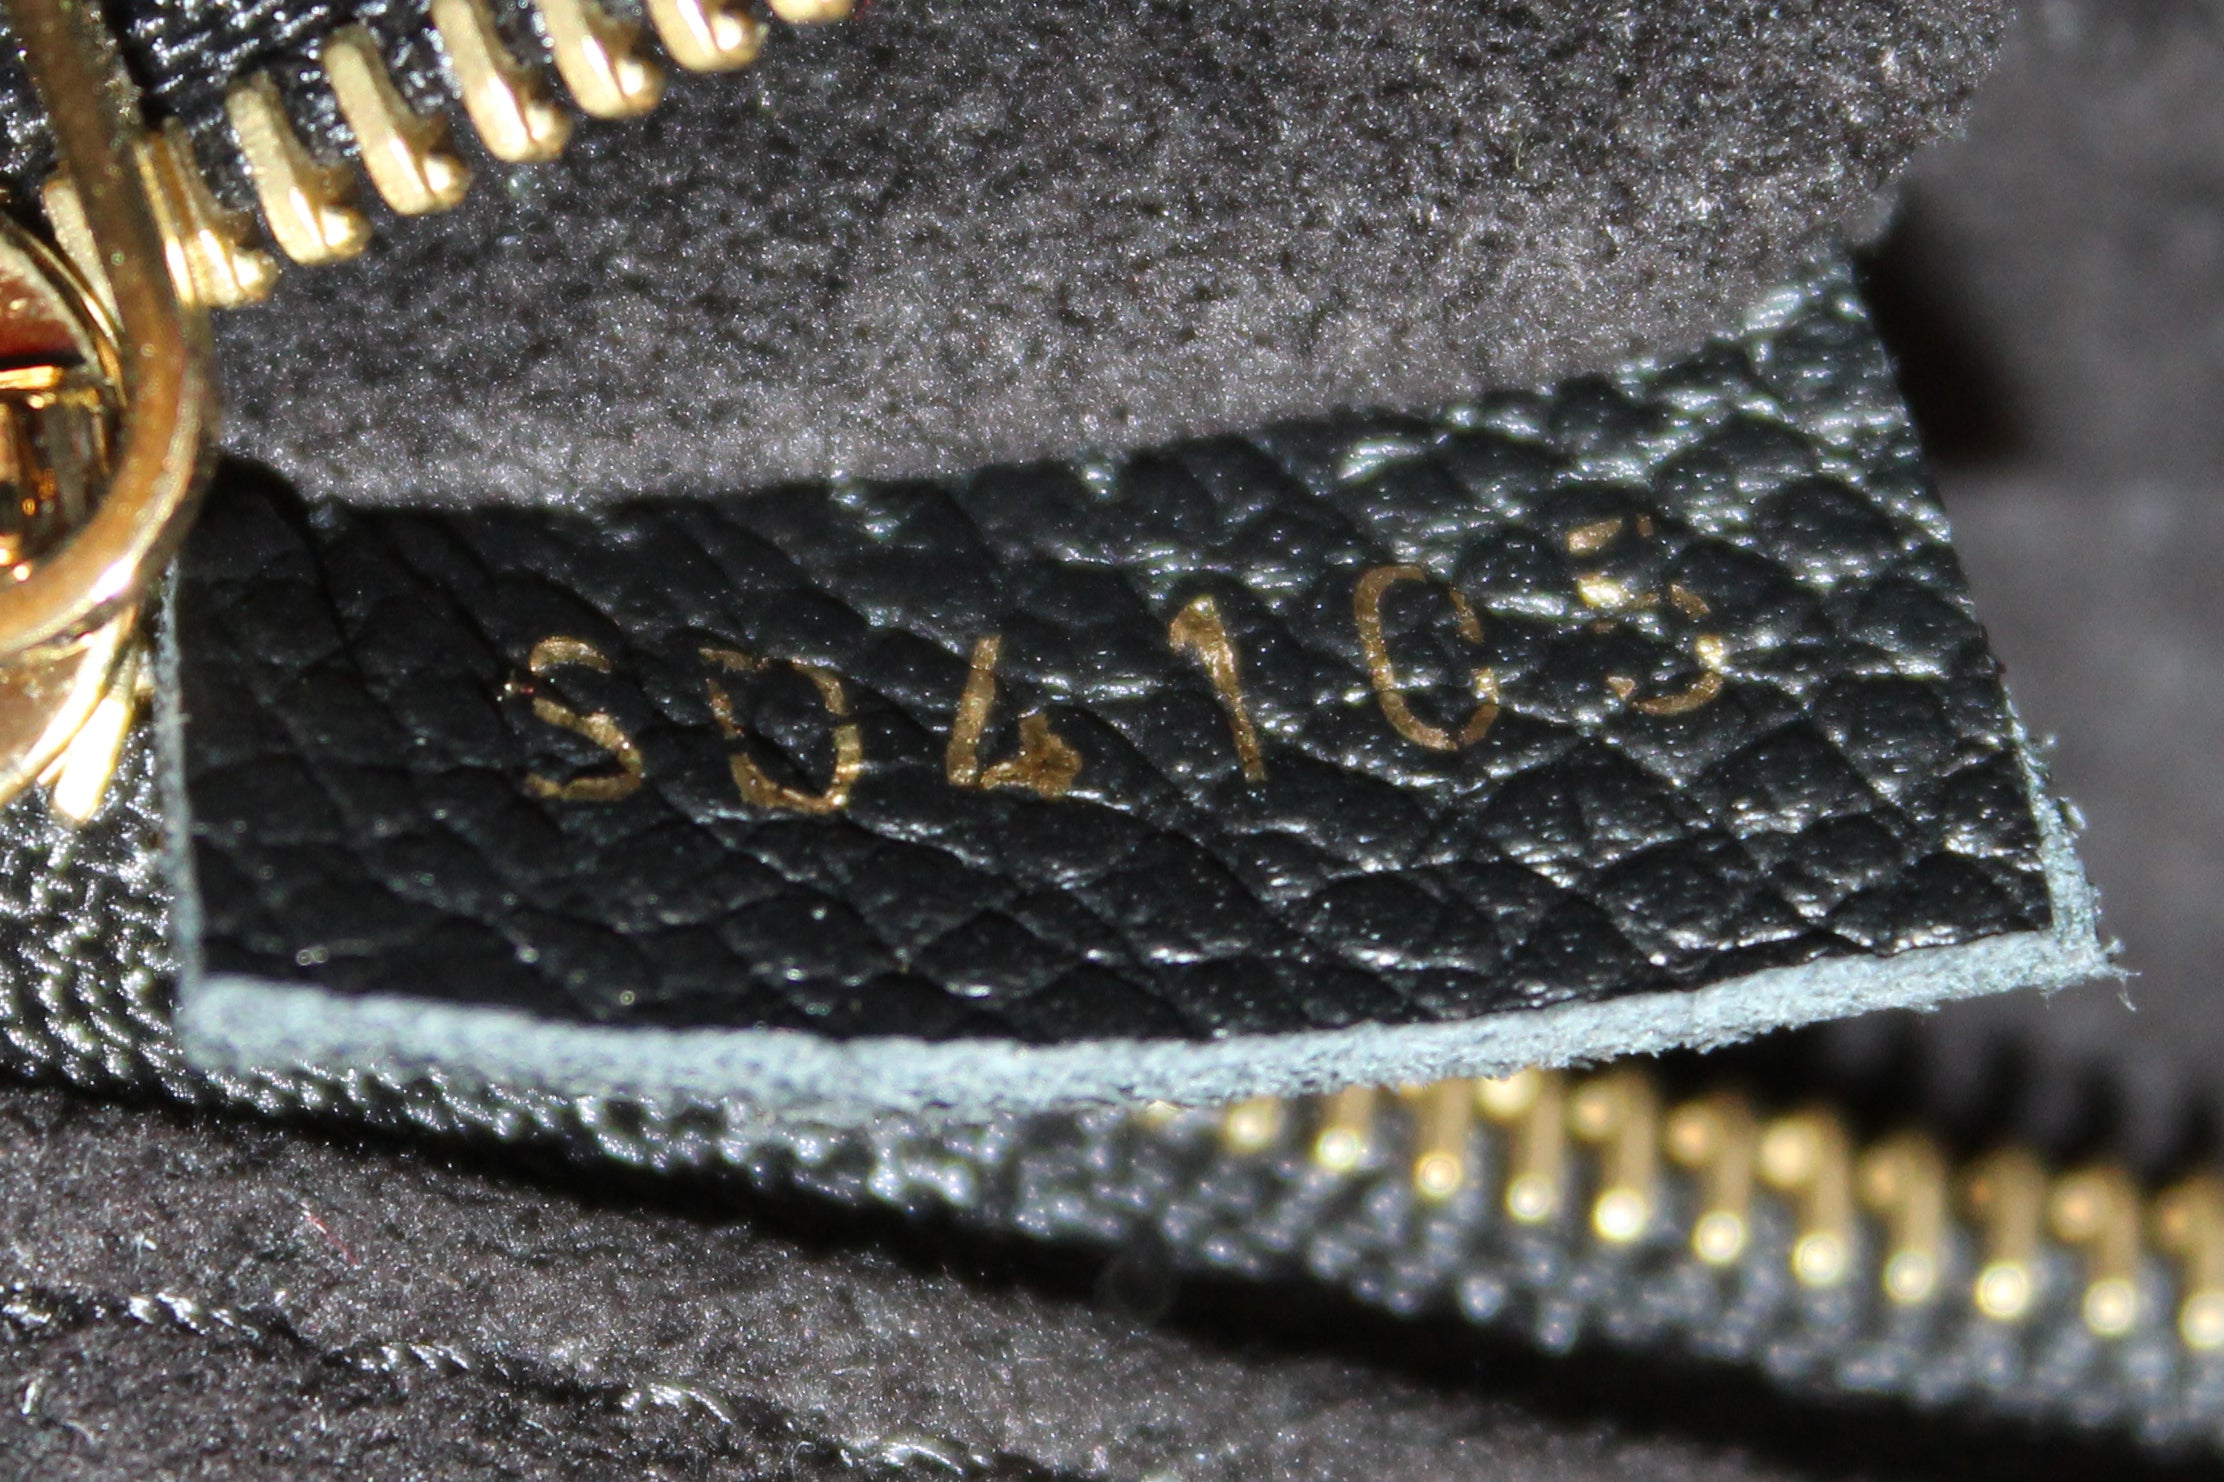 Authentic Louis Vuitton Black Empreinte Leather Saint-Germain PM Bag –  Paris Station Shop